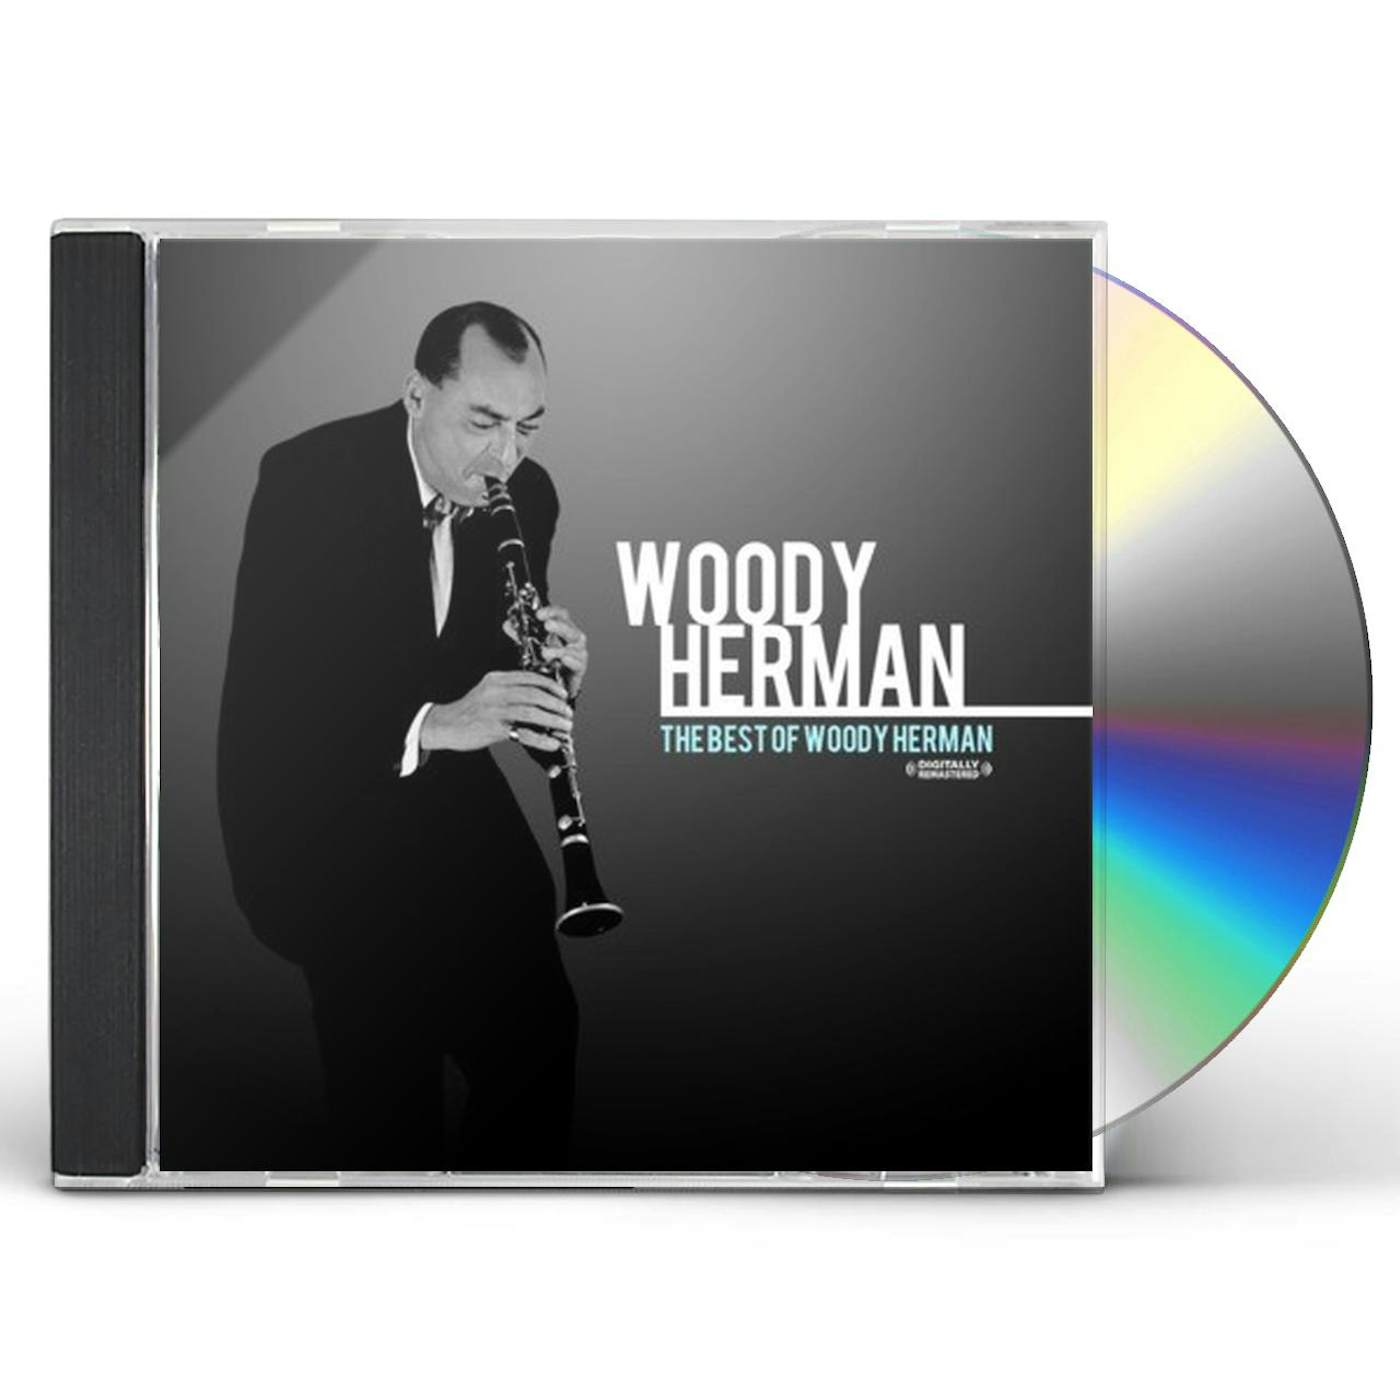 BEST OF WOODY HERMAN CD